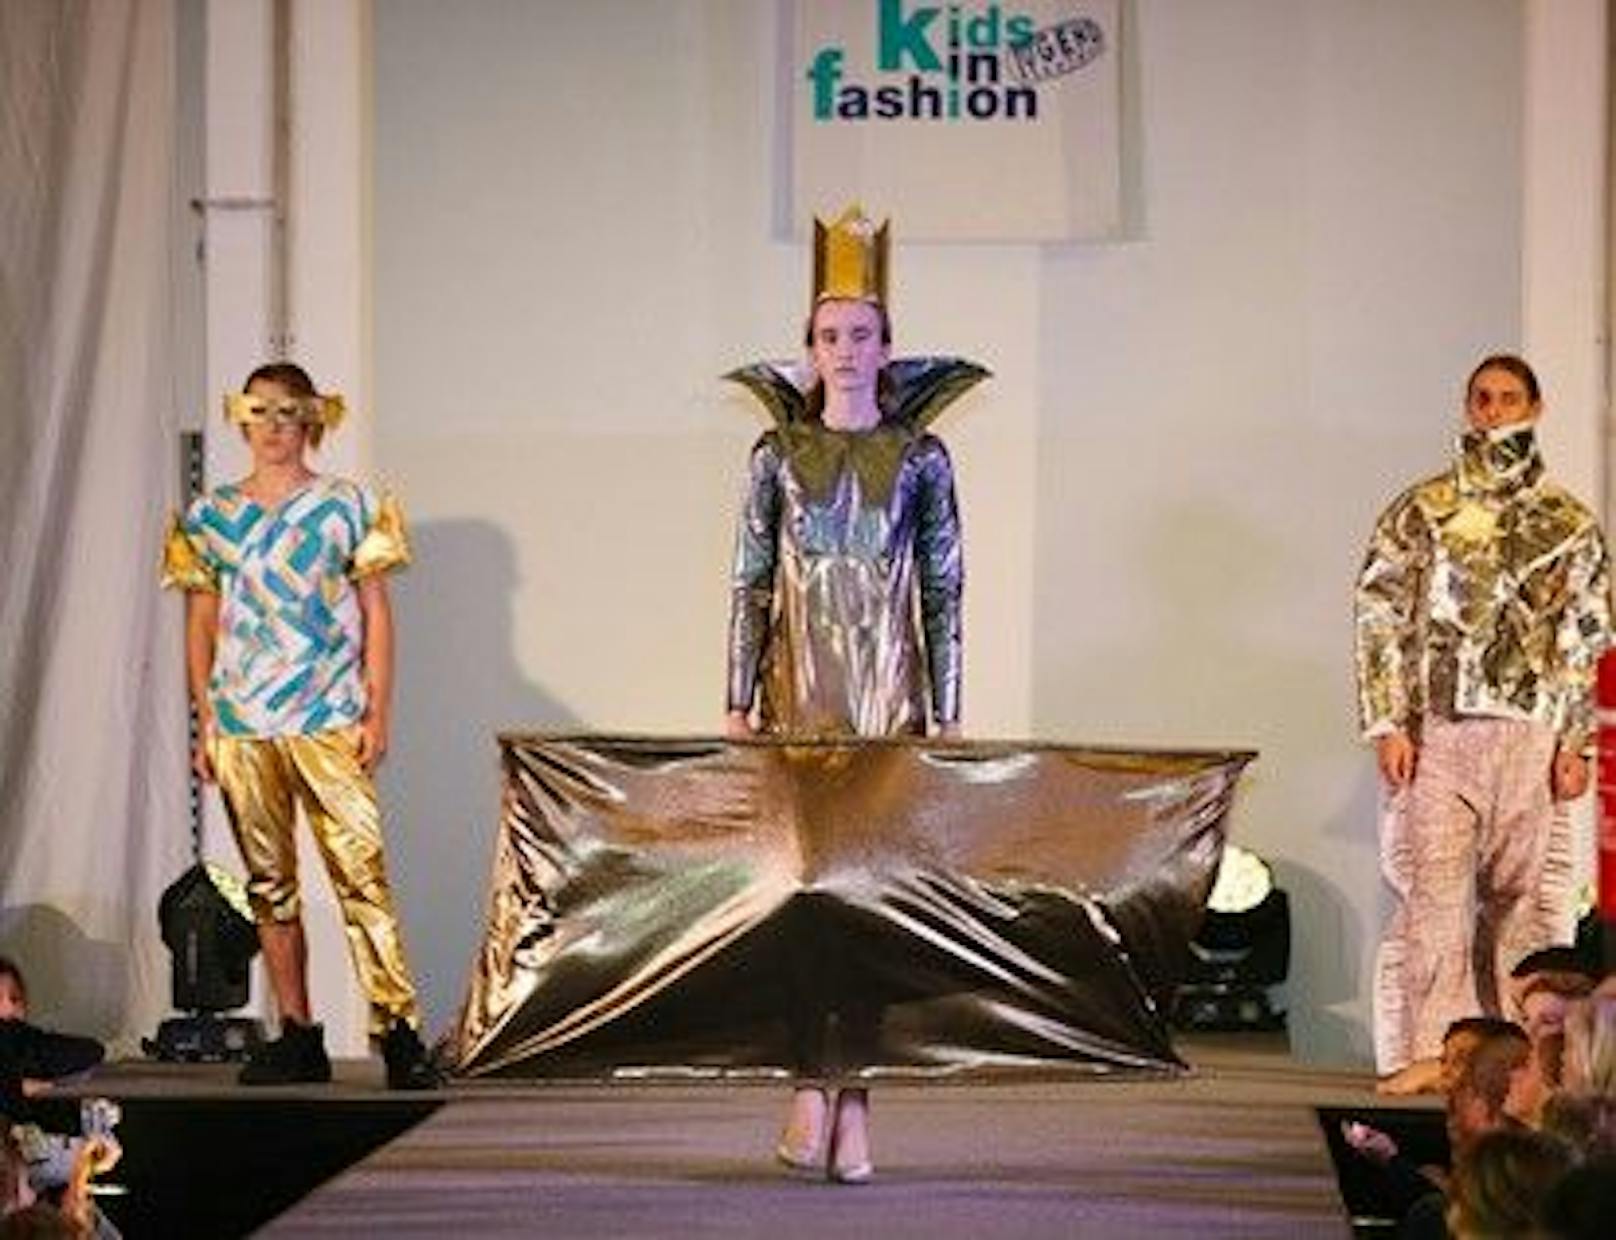 Vor 25 Jahren hat der Verein Wiener Jugendzentren den österreichweiten Modedesign-Wettbewerb für Kinder und Jugendlichen zwischen 4 und 21 Jahren ins Leben gerufen.